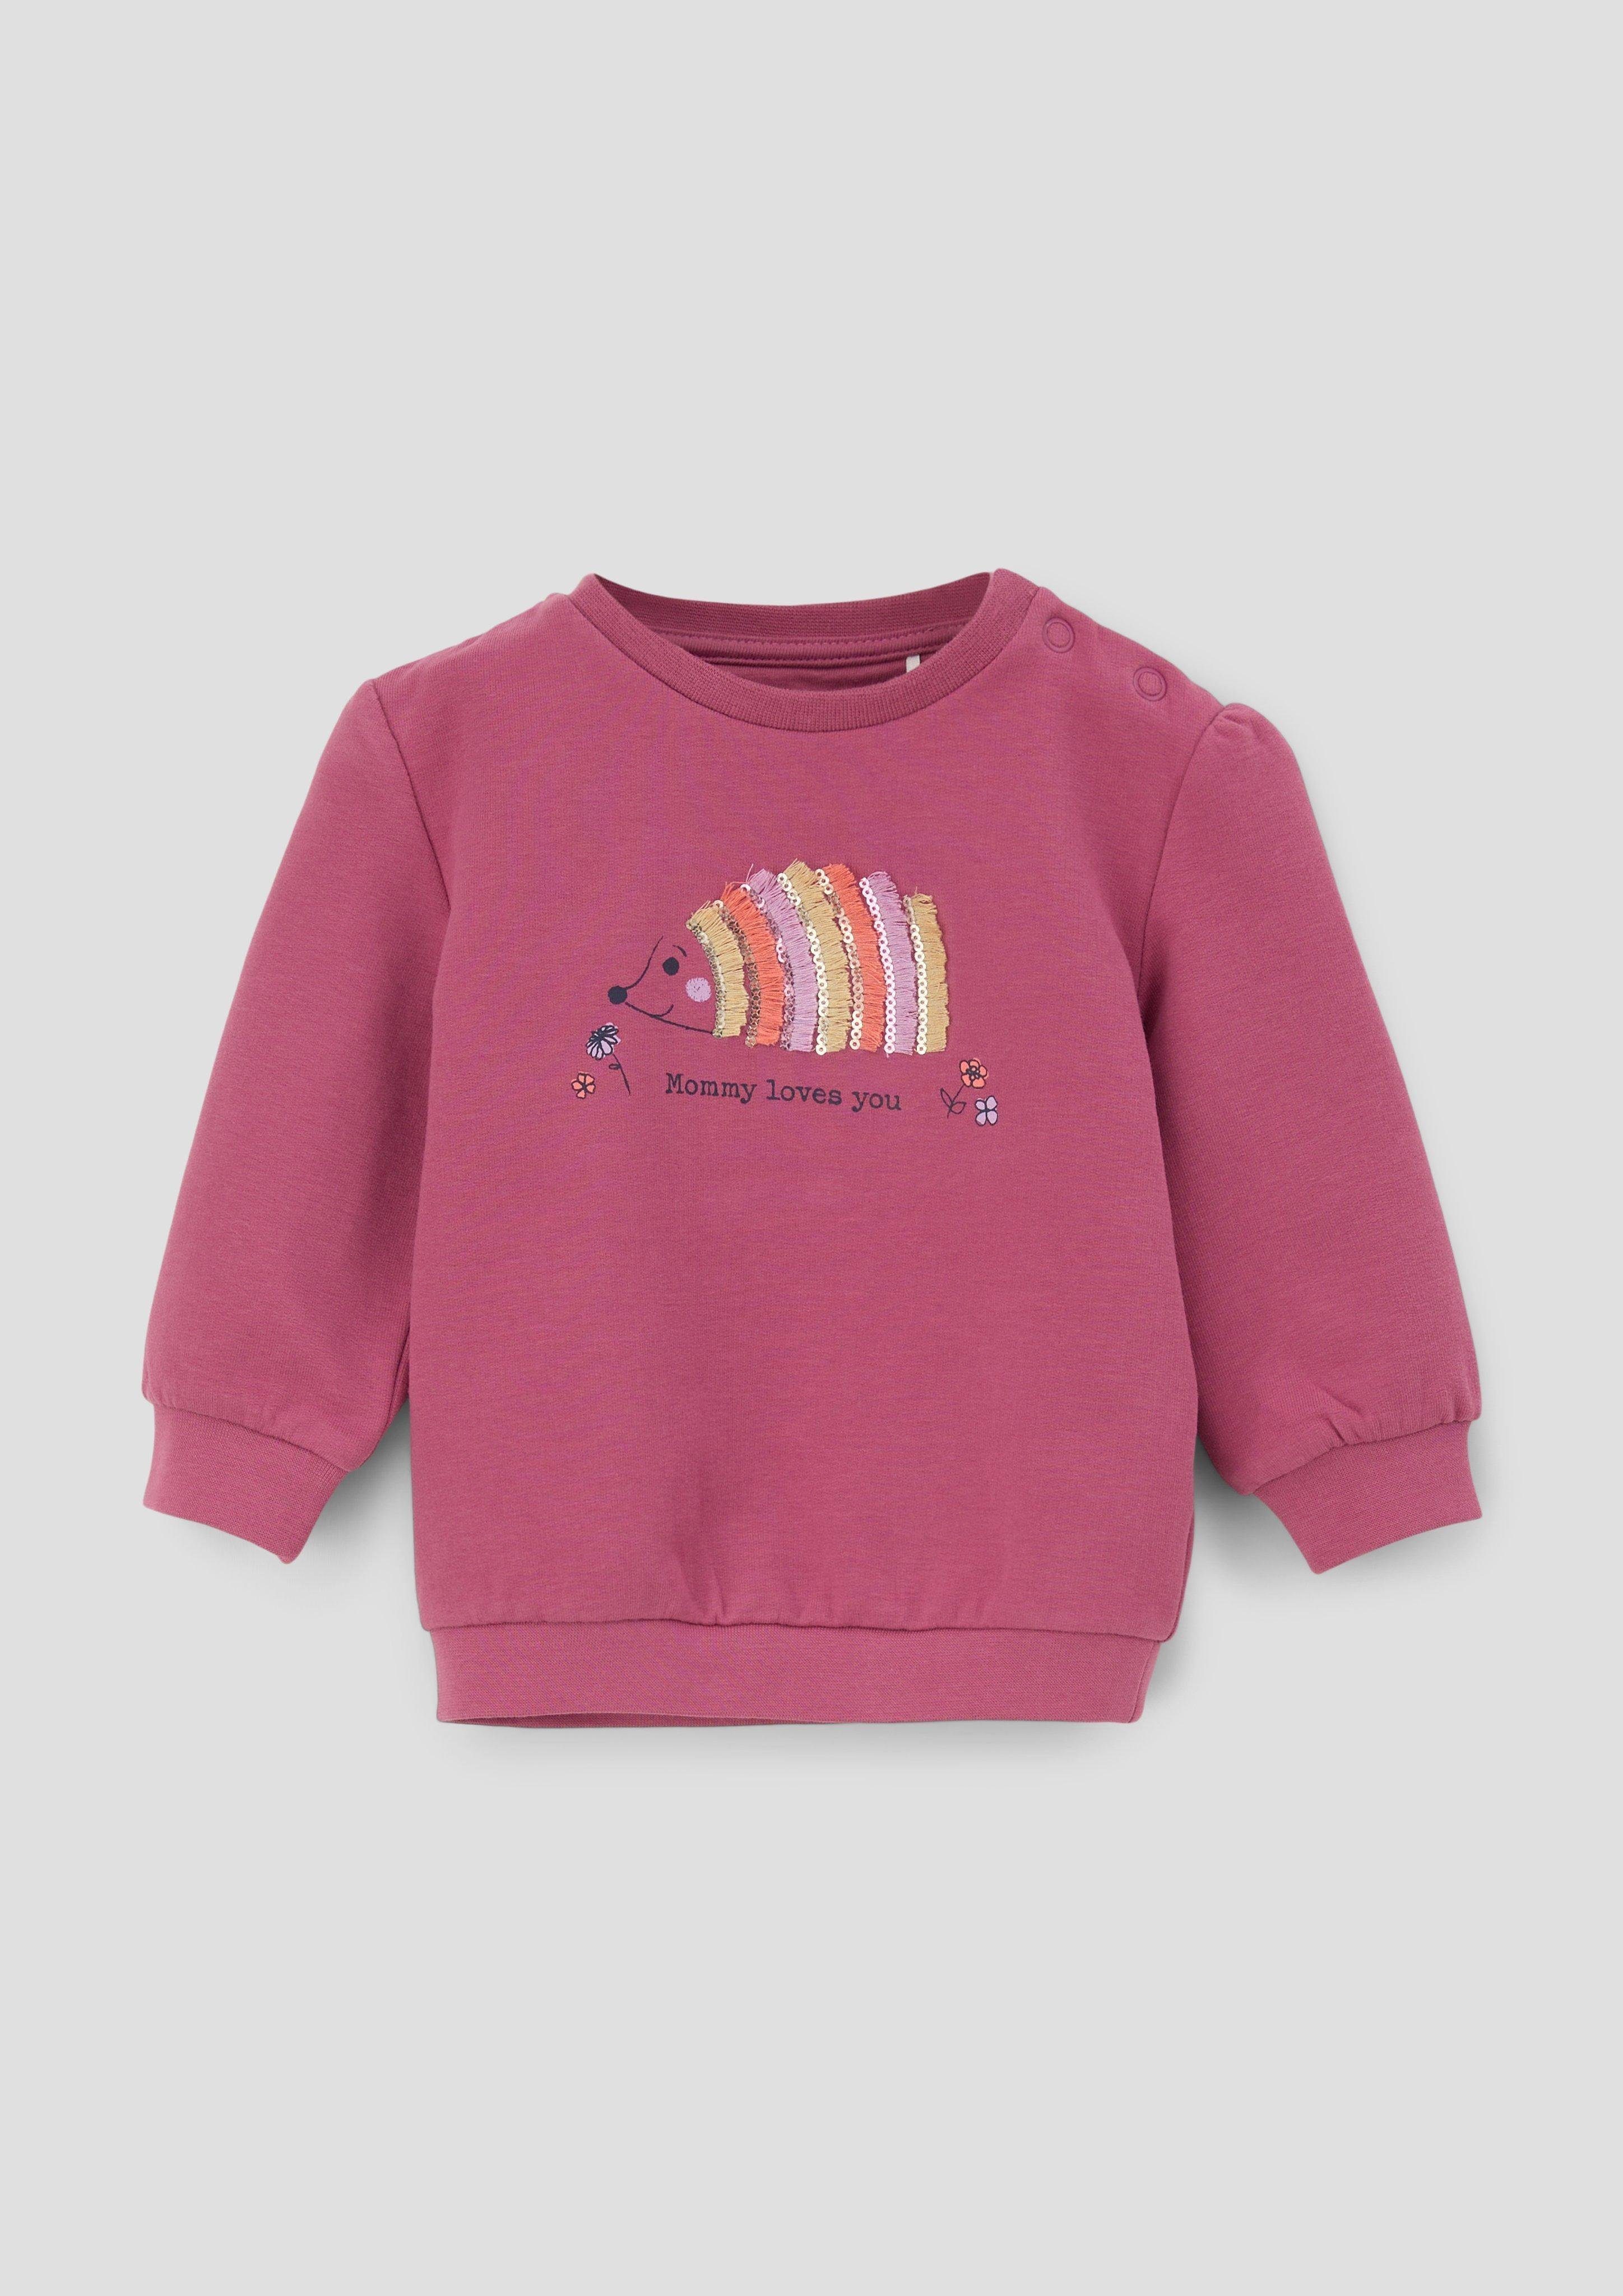 Sweatshirt Frontprint Raffung s.Oliver mit Sweater pink Fransen, Pailletten,